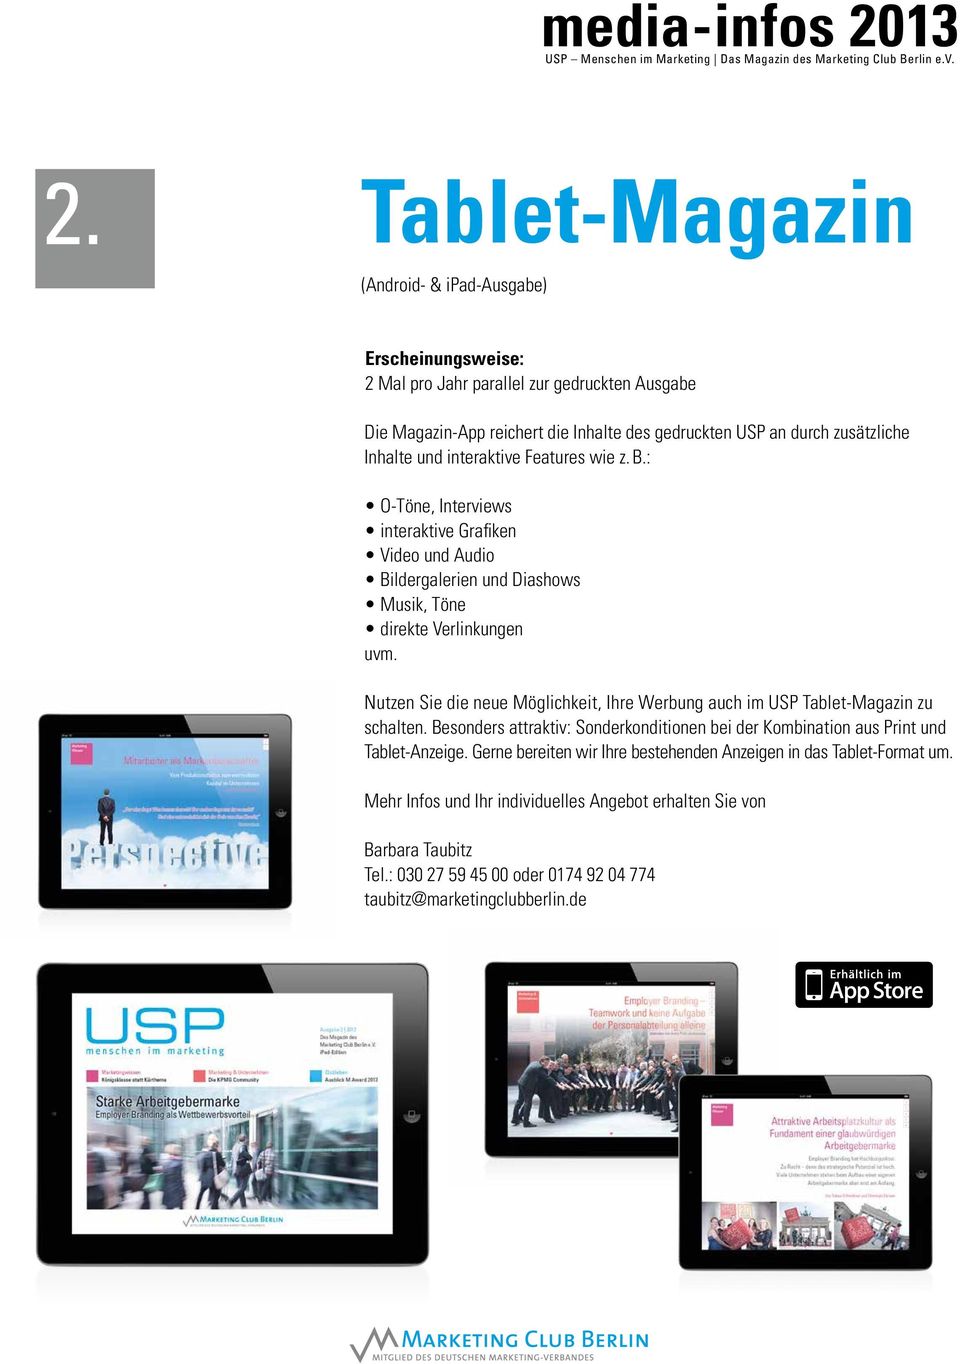 Nutzen Sie die neue Möglichkeit, Ihre Werbung auch im USP Tablet-Magazin zu schalten. Besonders attraktiv: Sonderkonditionen bei der Kombination aus Print und Tablet-Anzeige.